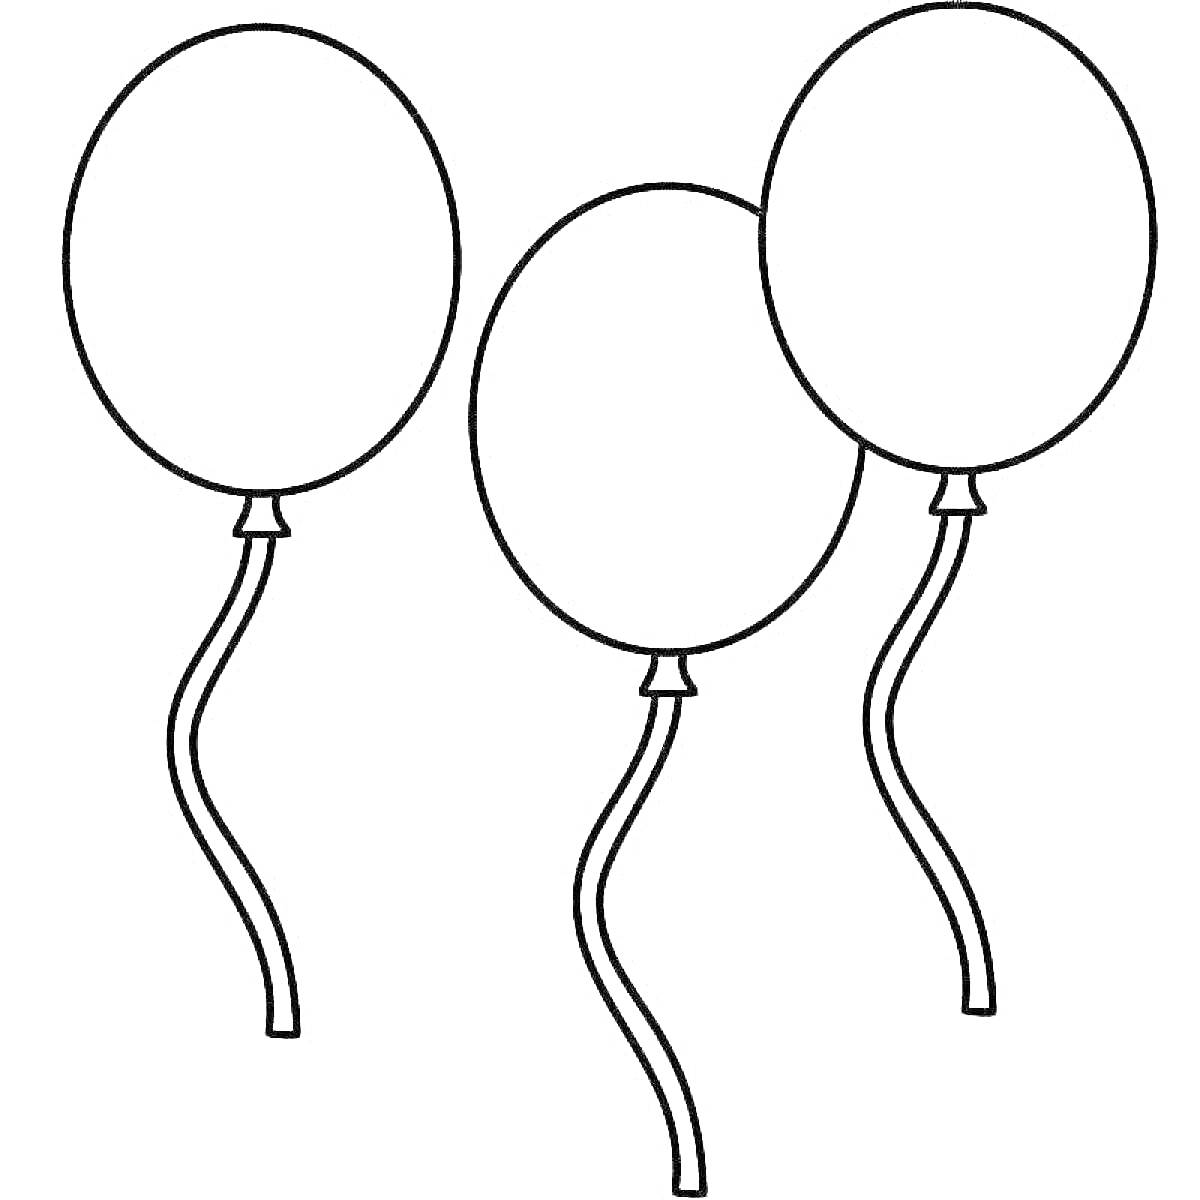 Раскраска Три воздушных шарика с длинными ленточками